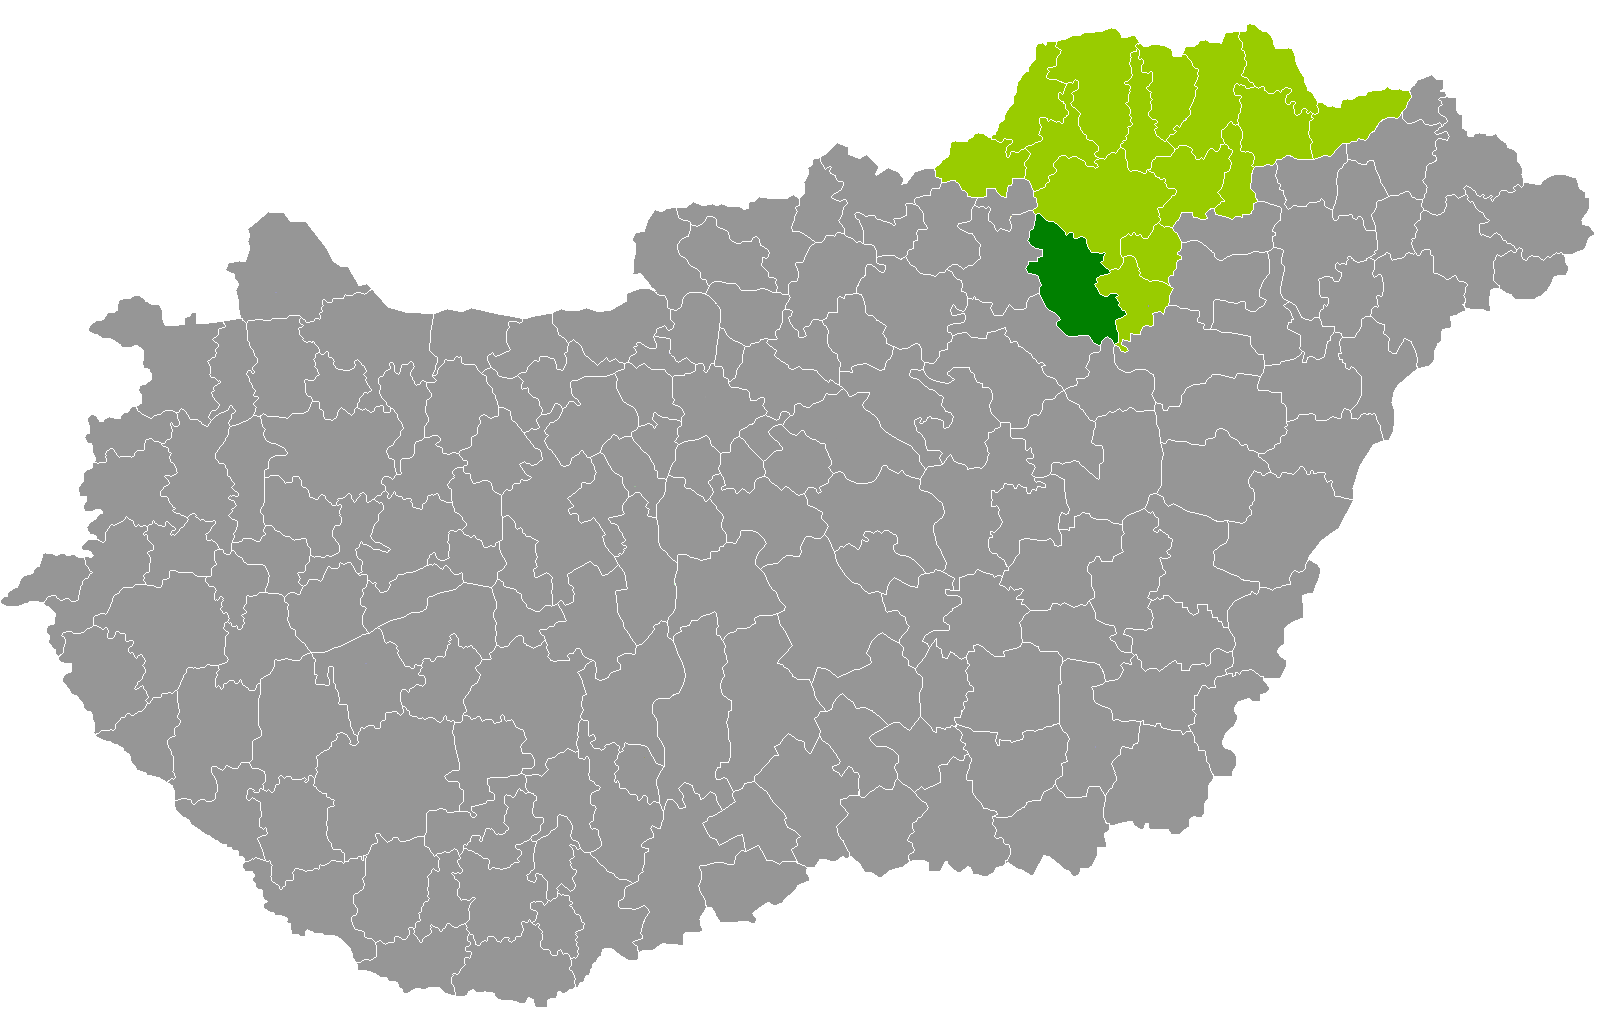 magyarország térkép mezőkövesd Mezokovesdi Jaras Wikipedia magyarország térkép mezőkövesd